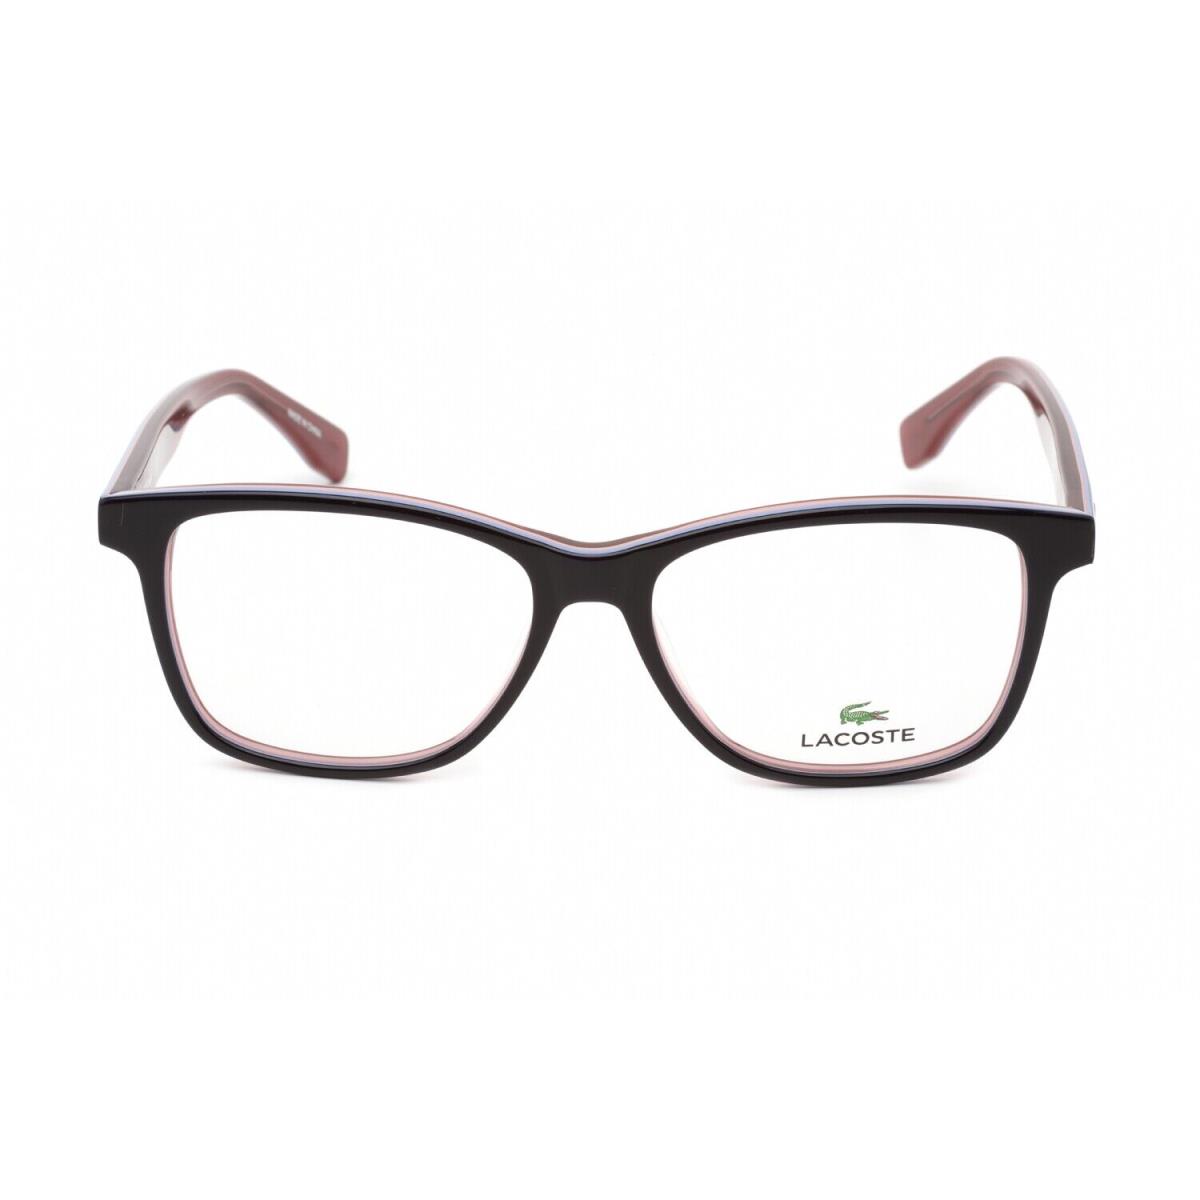 Lacoste Women Eyeglasses Size 53mm-140mm-15mm